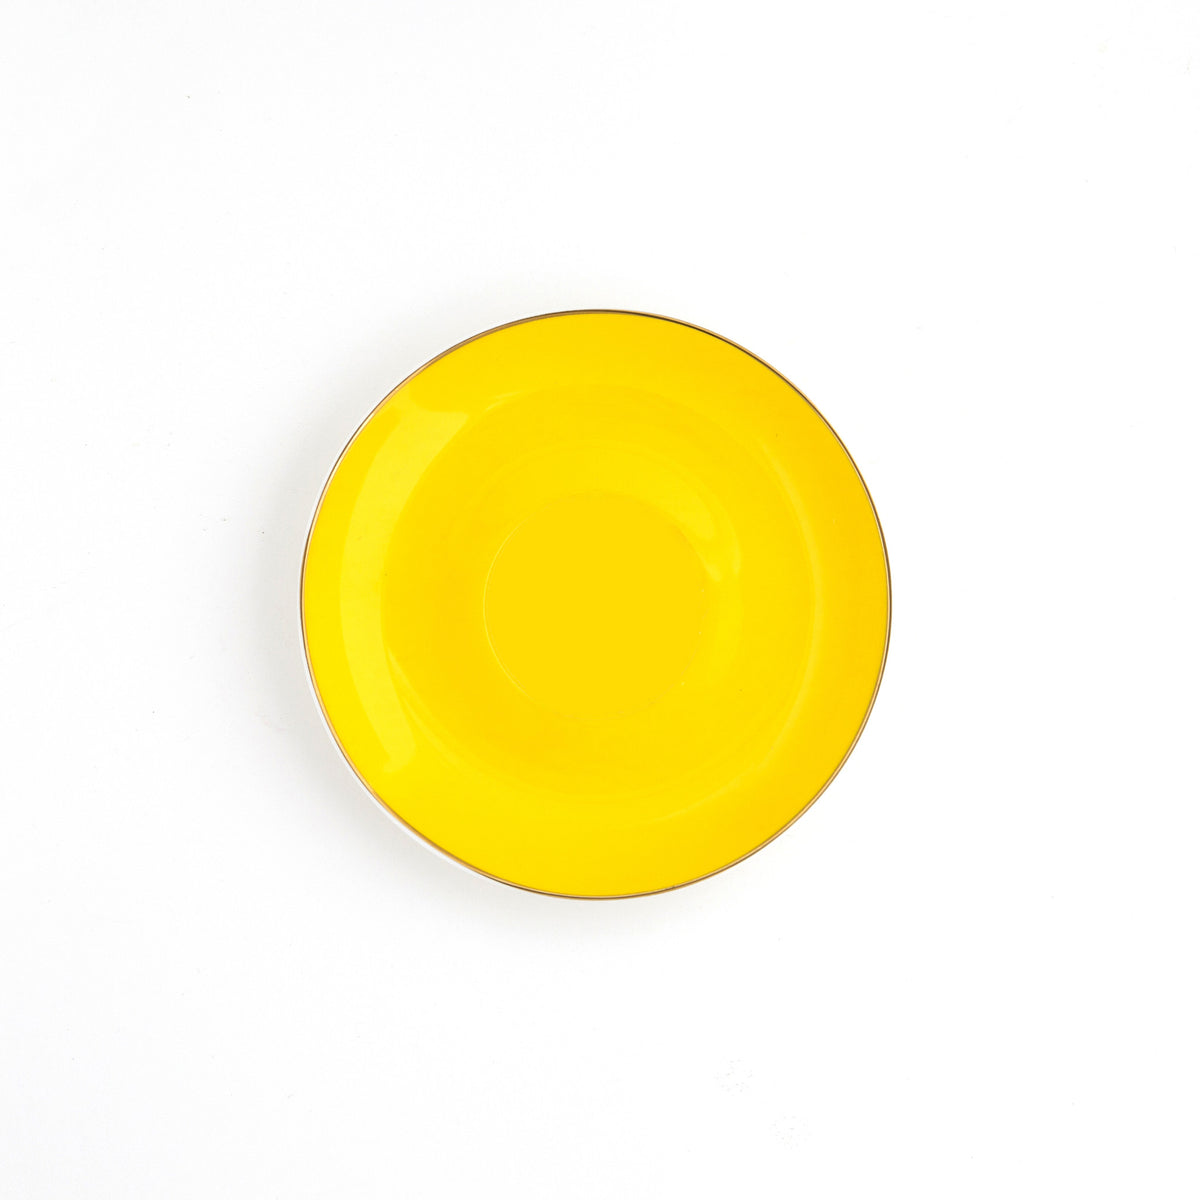 Yellow Teacup and Saucer